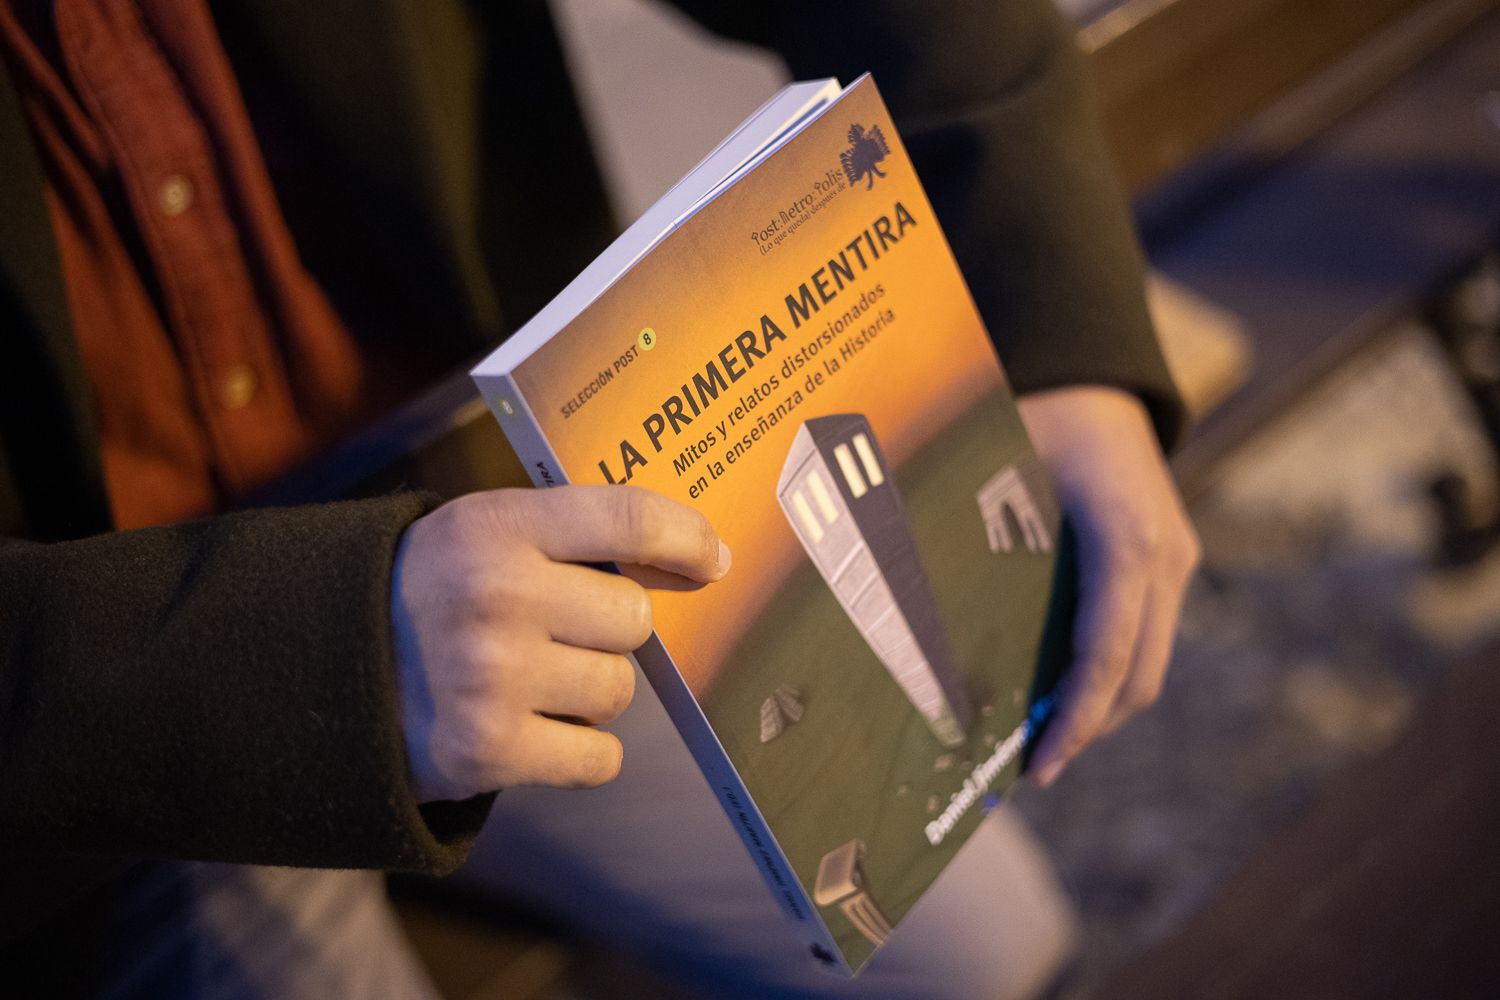 'La primera mentira', el libro colaborativo que ha editado Daniel Jiménez